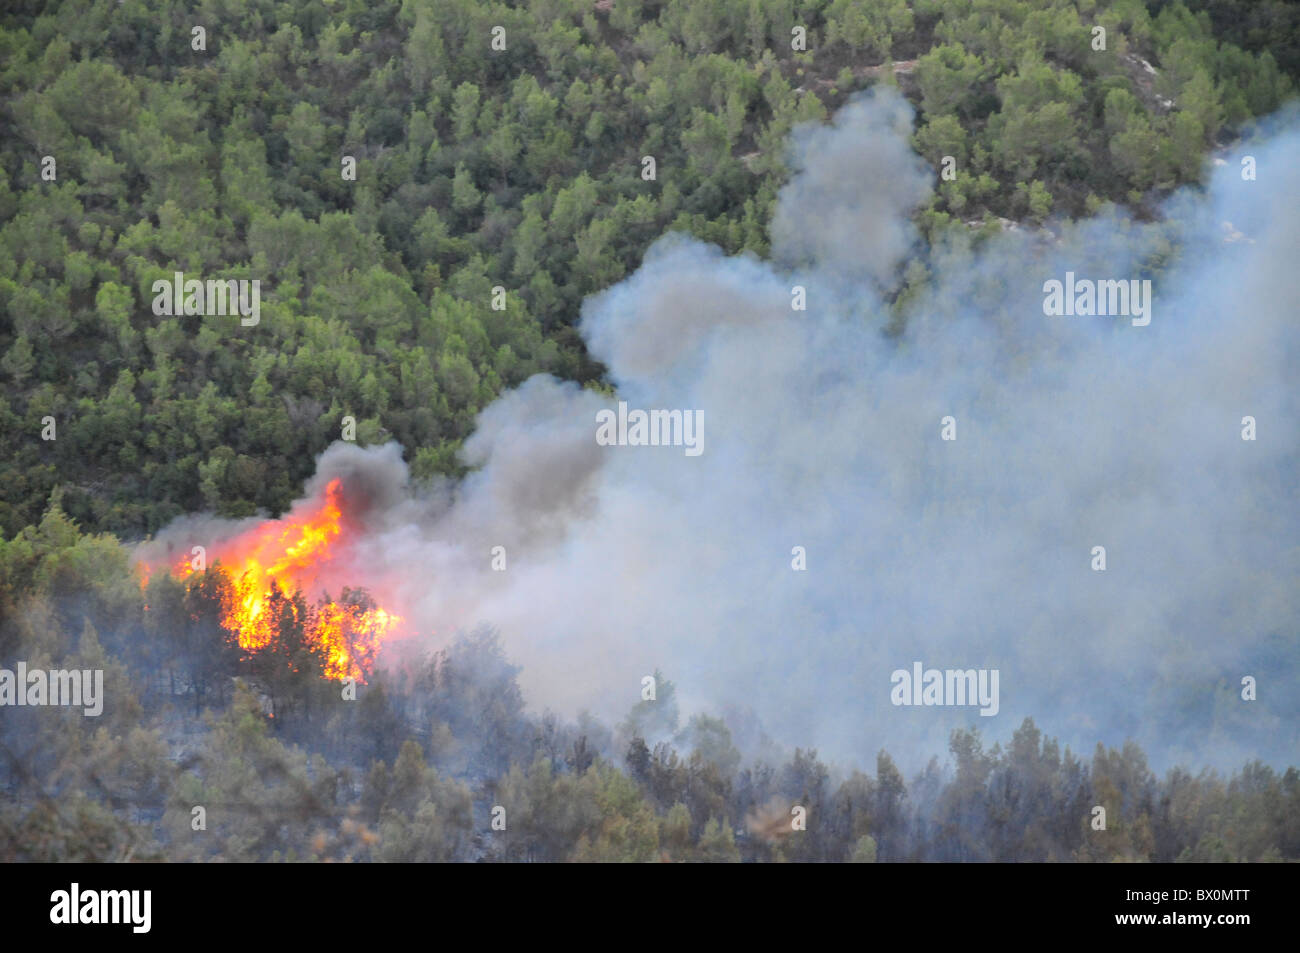 Grand feu de forêt fait rage sur la Montagne de Carmel au Sud de Haïfa en Israël. Banque D'Images